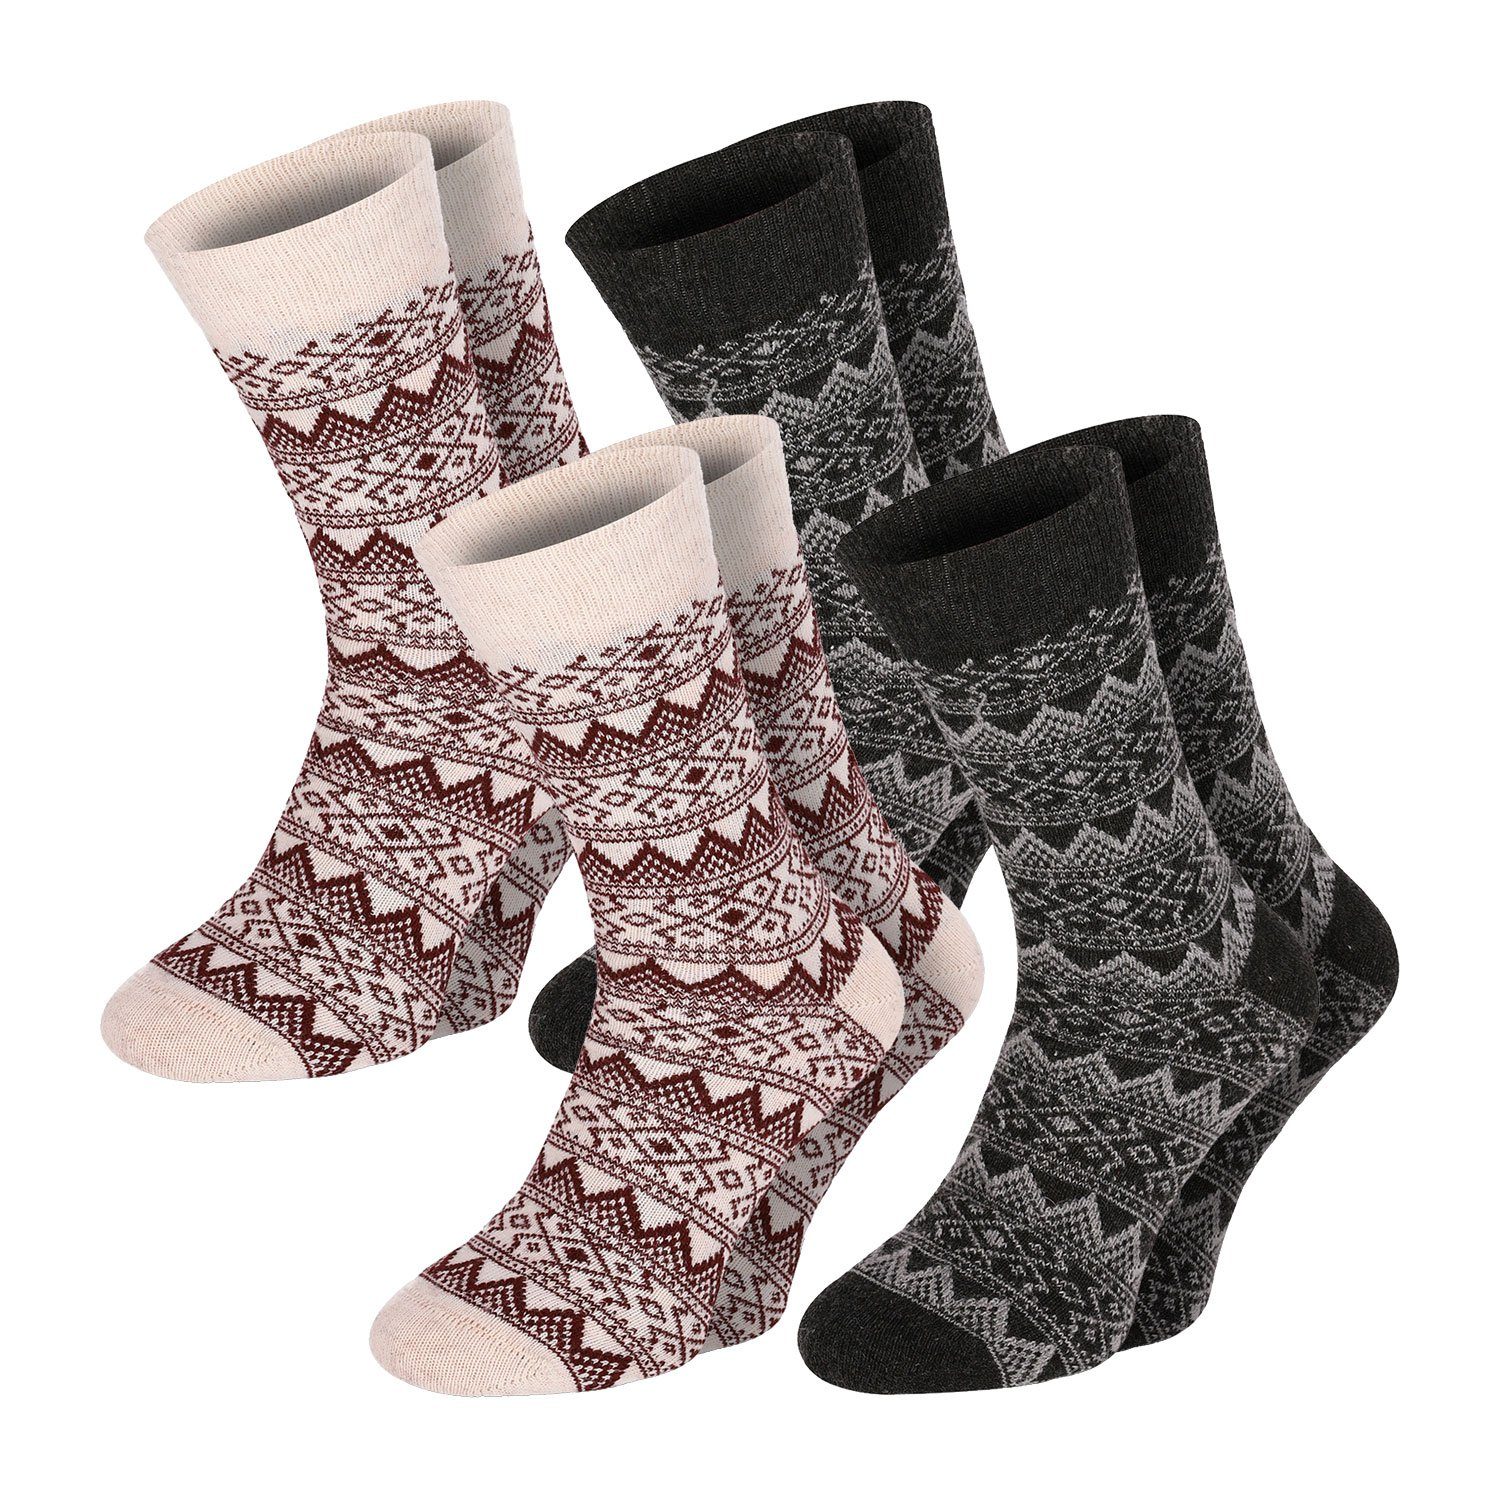 Winter Herren Strümpfe Lifestyle Wolle Chili Socken Schaf Classic 4 farbig Warm Wool Paar Damen